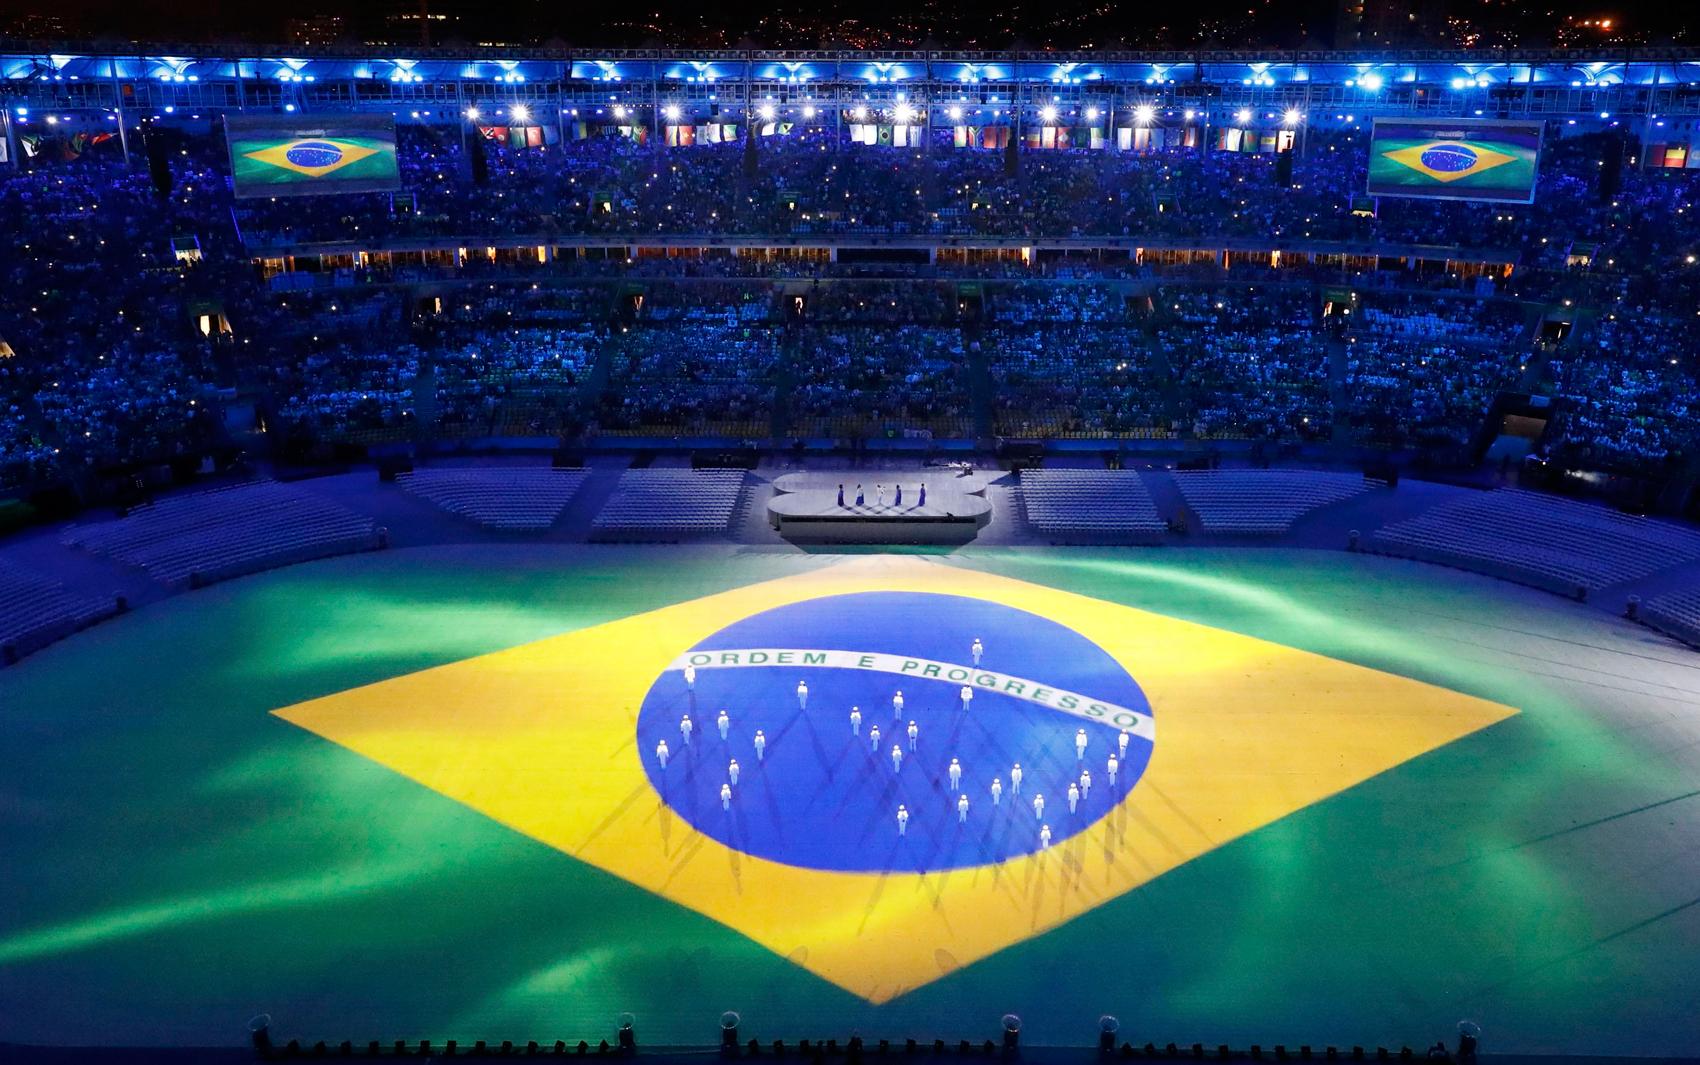 Cerimônia, no Maracanã, foi marcada pelo clima de euforia e triunfo